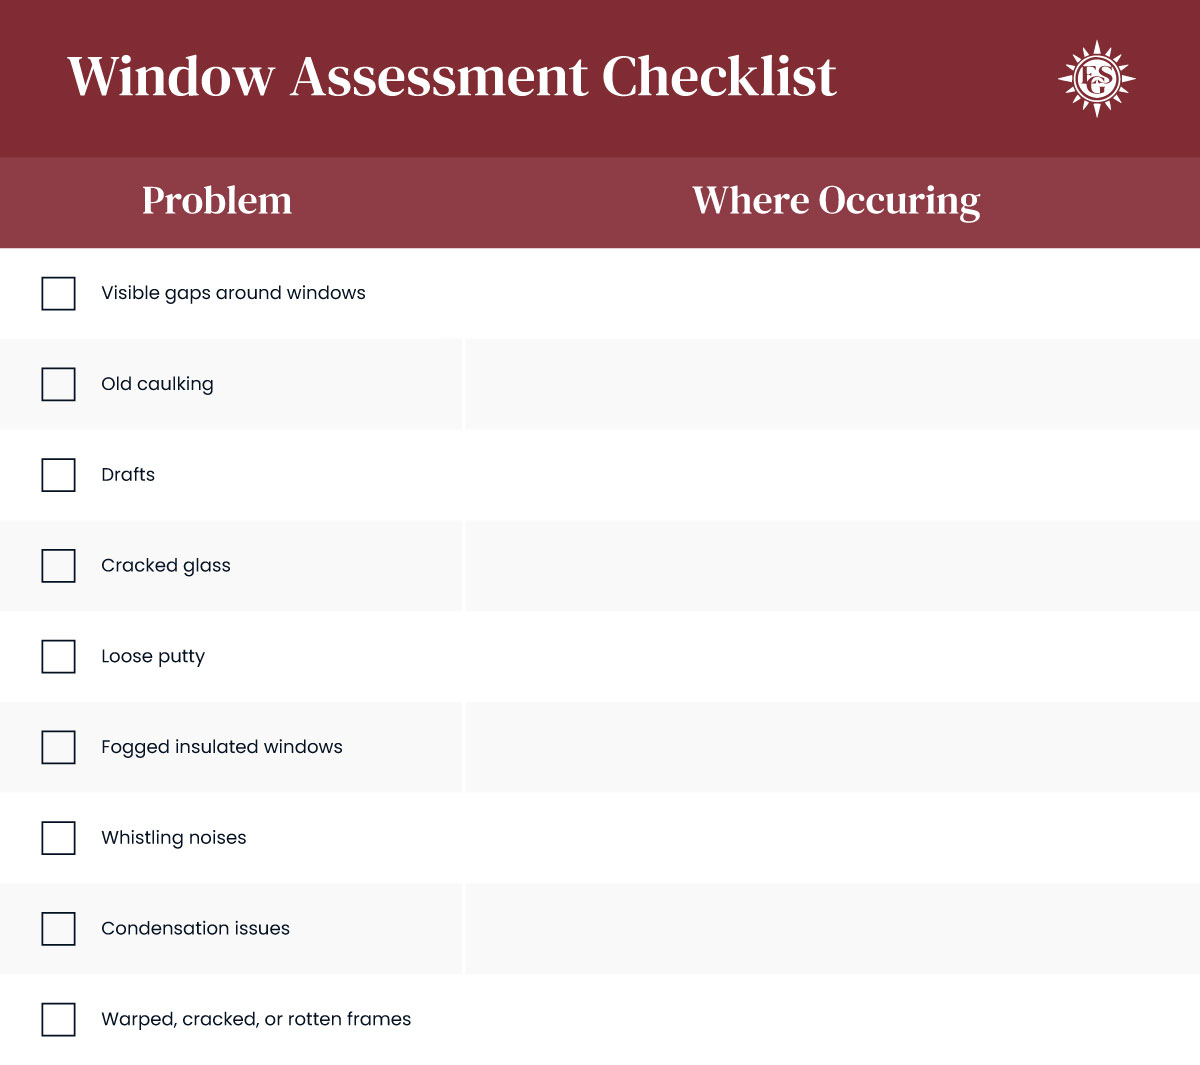 esg-window-assessment-checklist